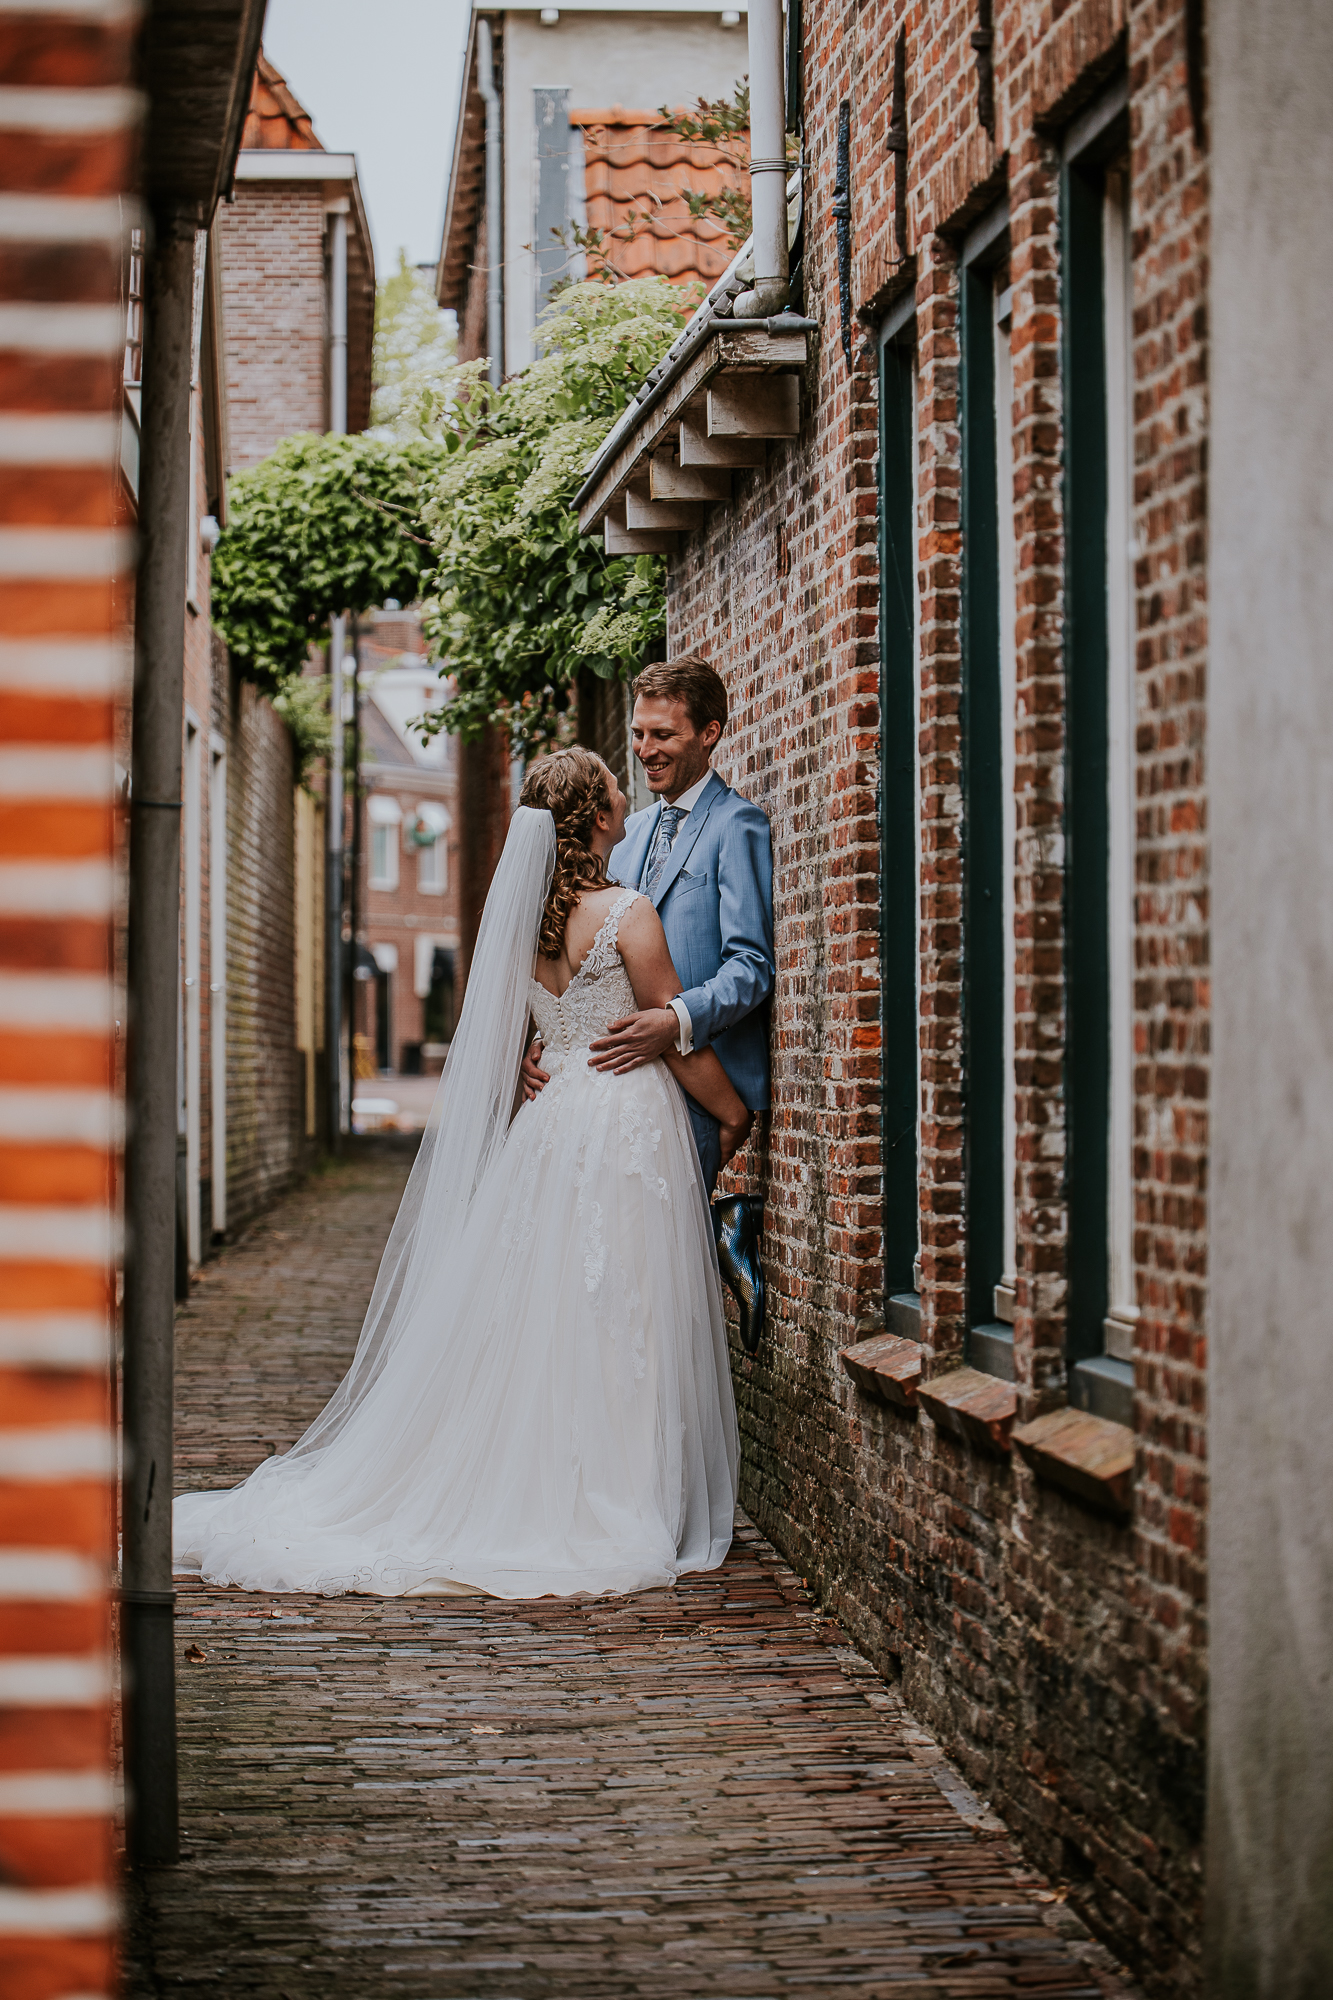 Bruidspaar in schattig steegje. Trouwfotografie door trouwfotograaf Nickie Fotografie uit Dokkum, Friesland.